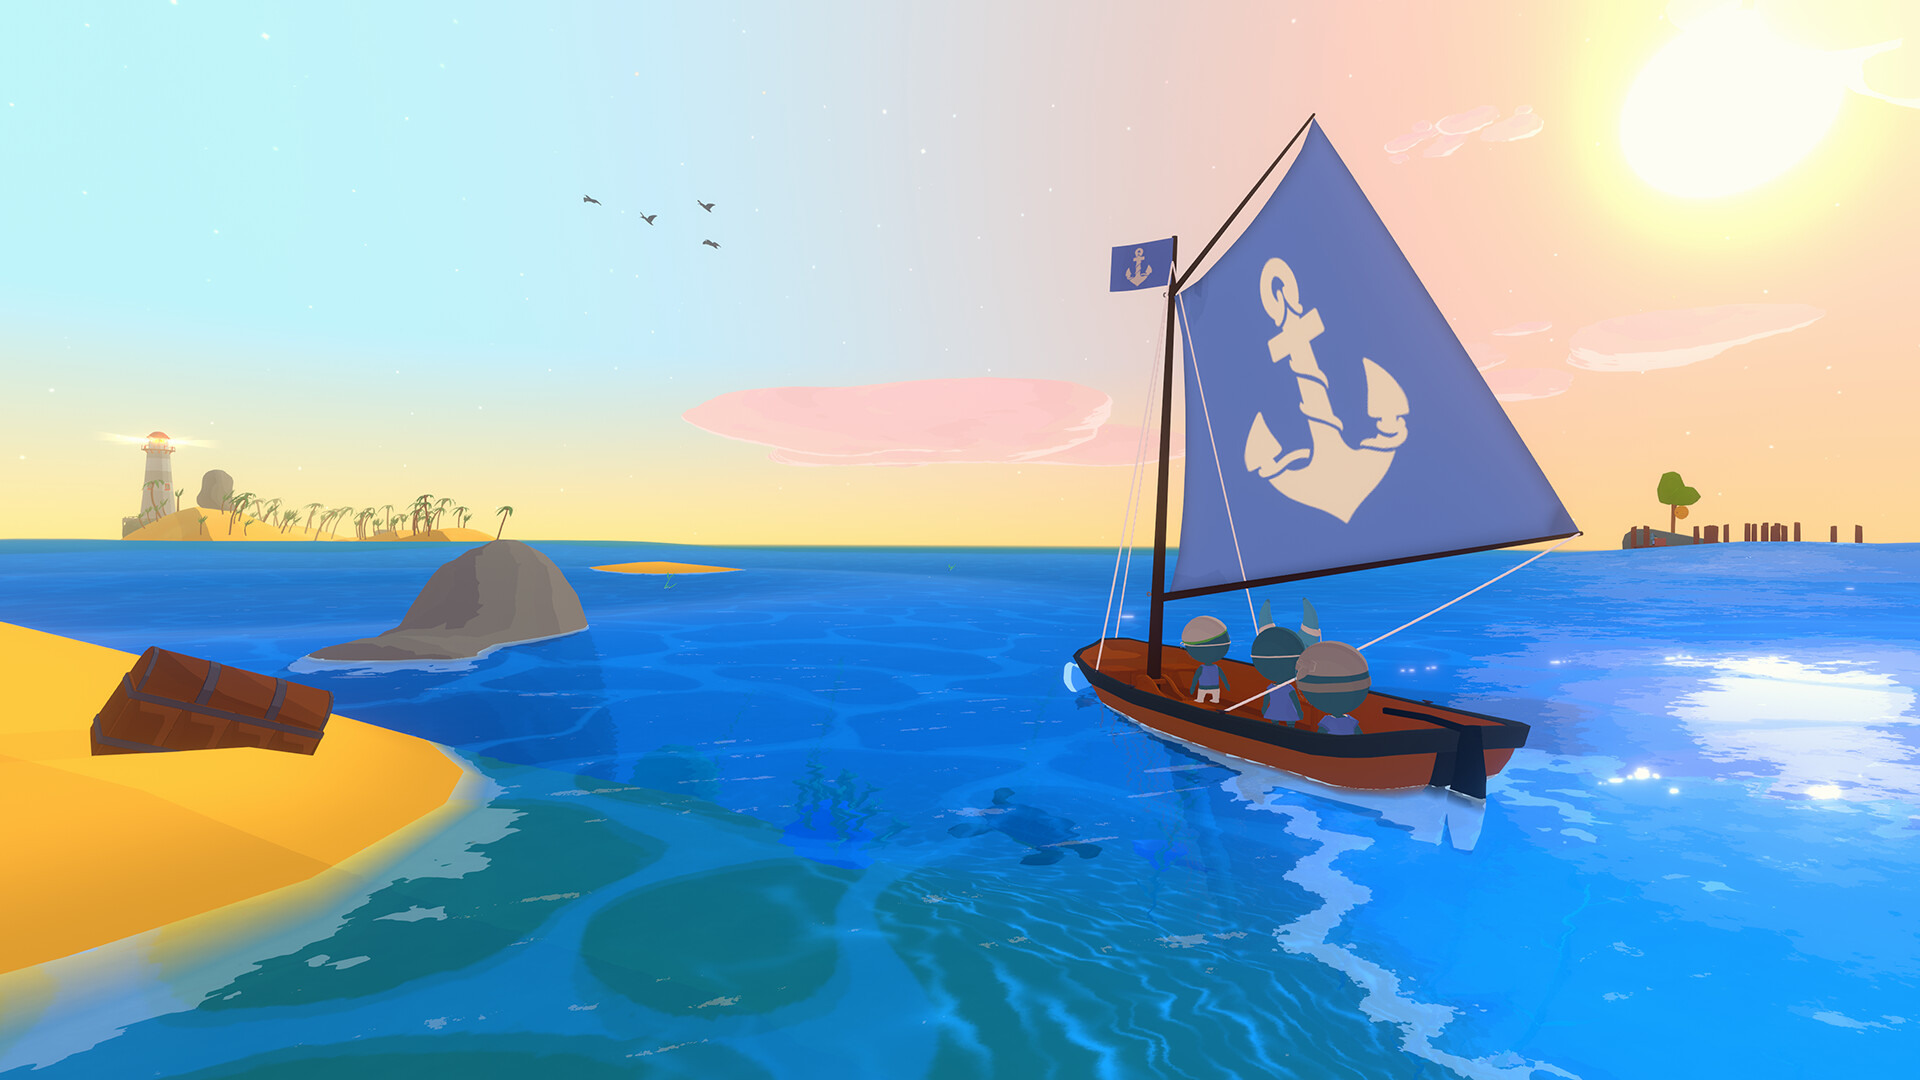 航海题材新作《帆之所向》正式上市 率领舰队越过深蓝海域插图4